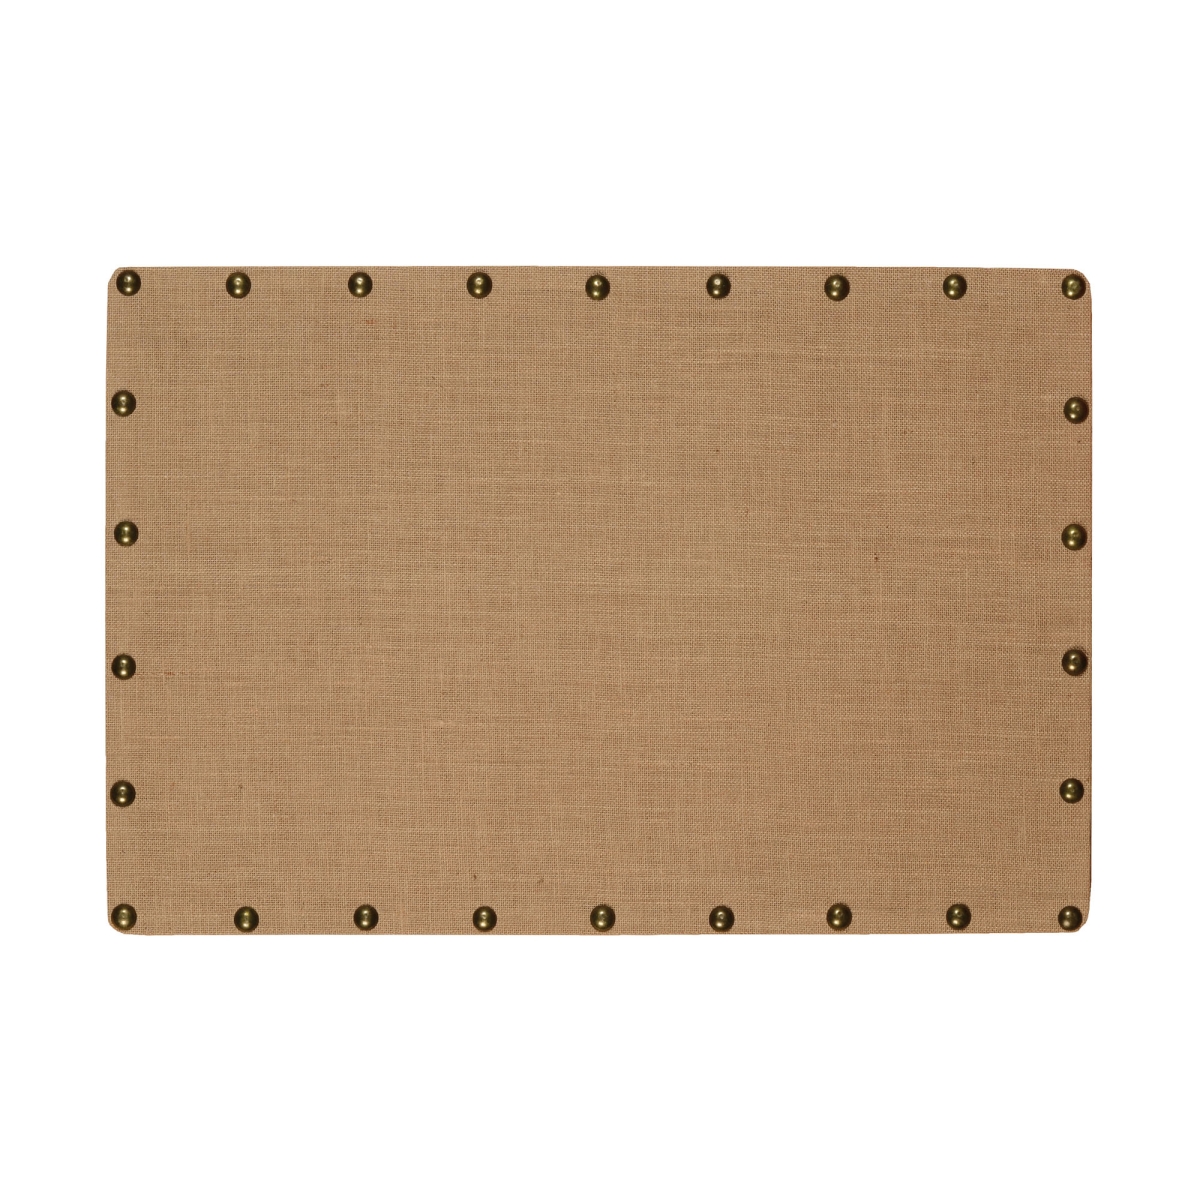 352269 Wooden Corkboard With Nailhead Details, Brown & Bronze - Medium